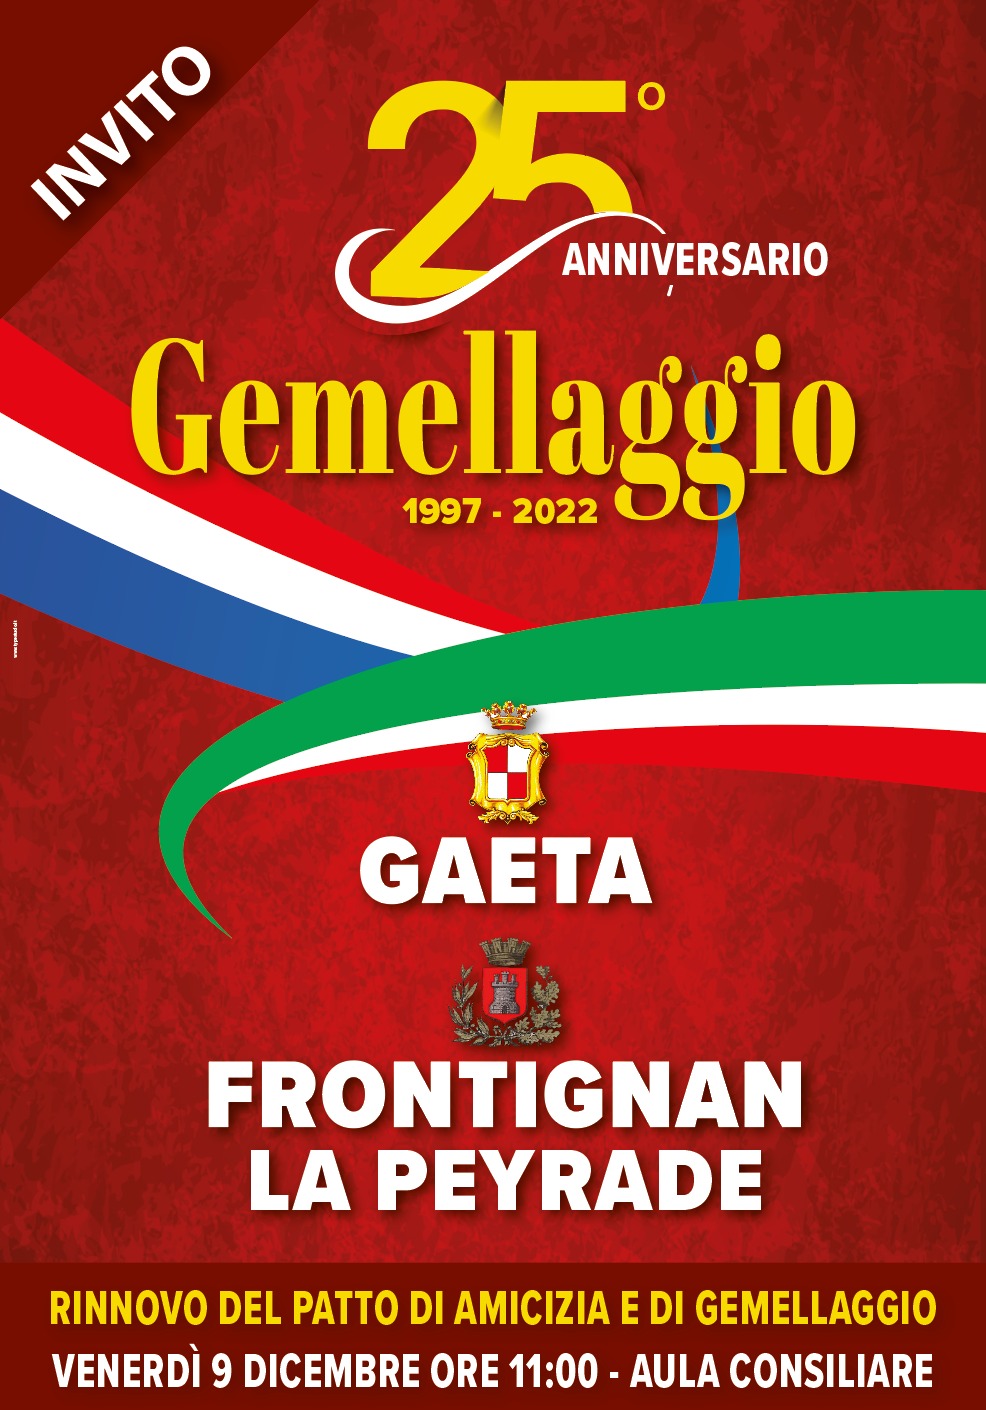 Gaeta e Frontignan La Peyrade si apprestano a festeggiare il 25° del gemellaggio